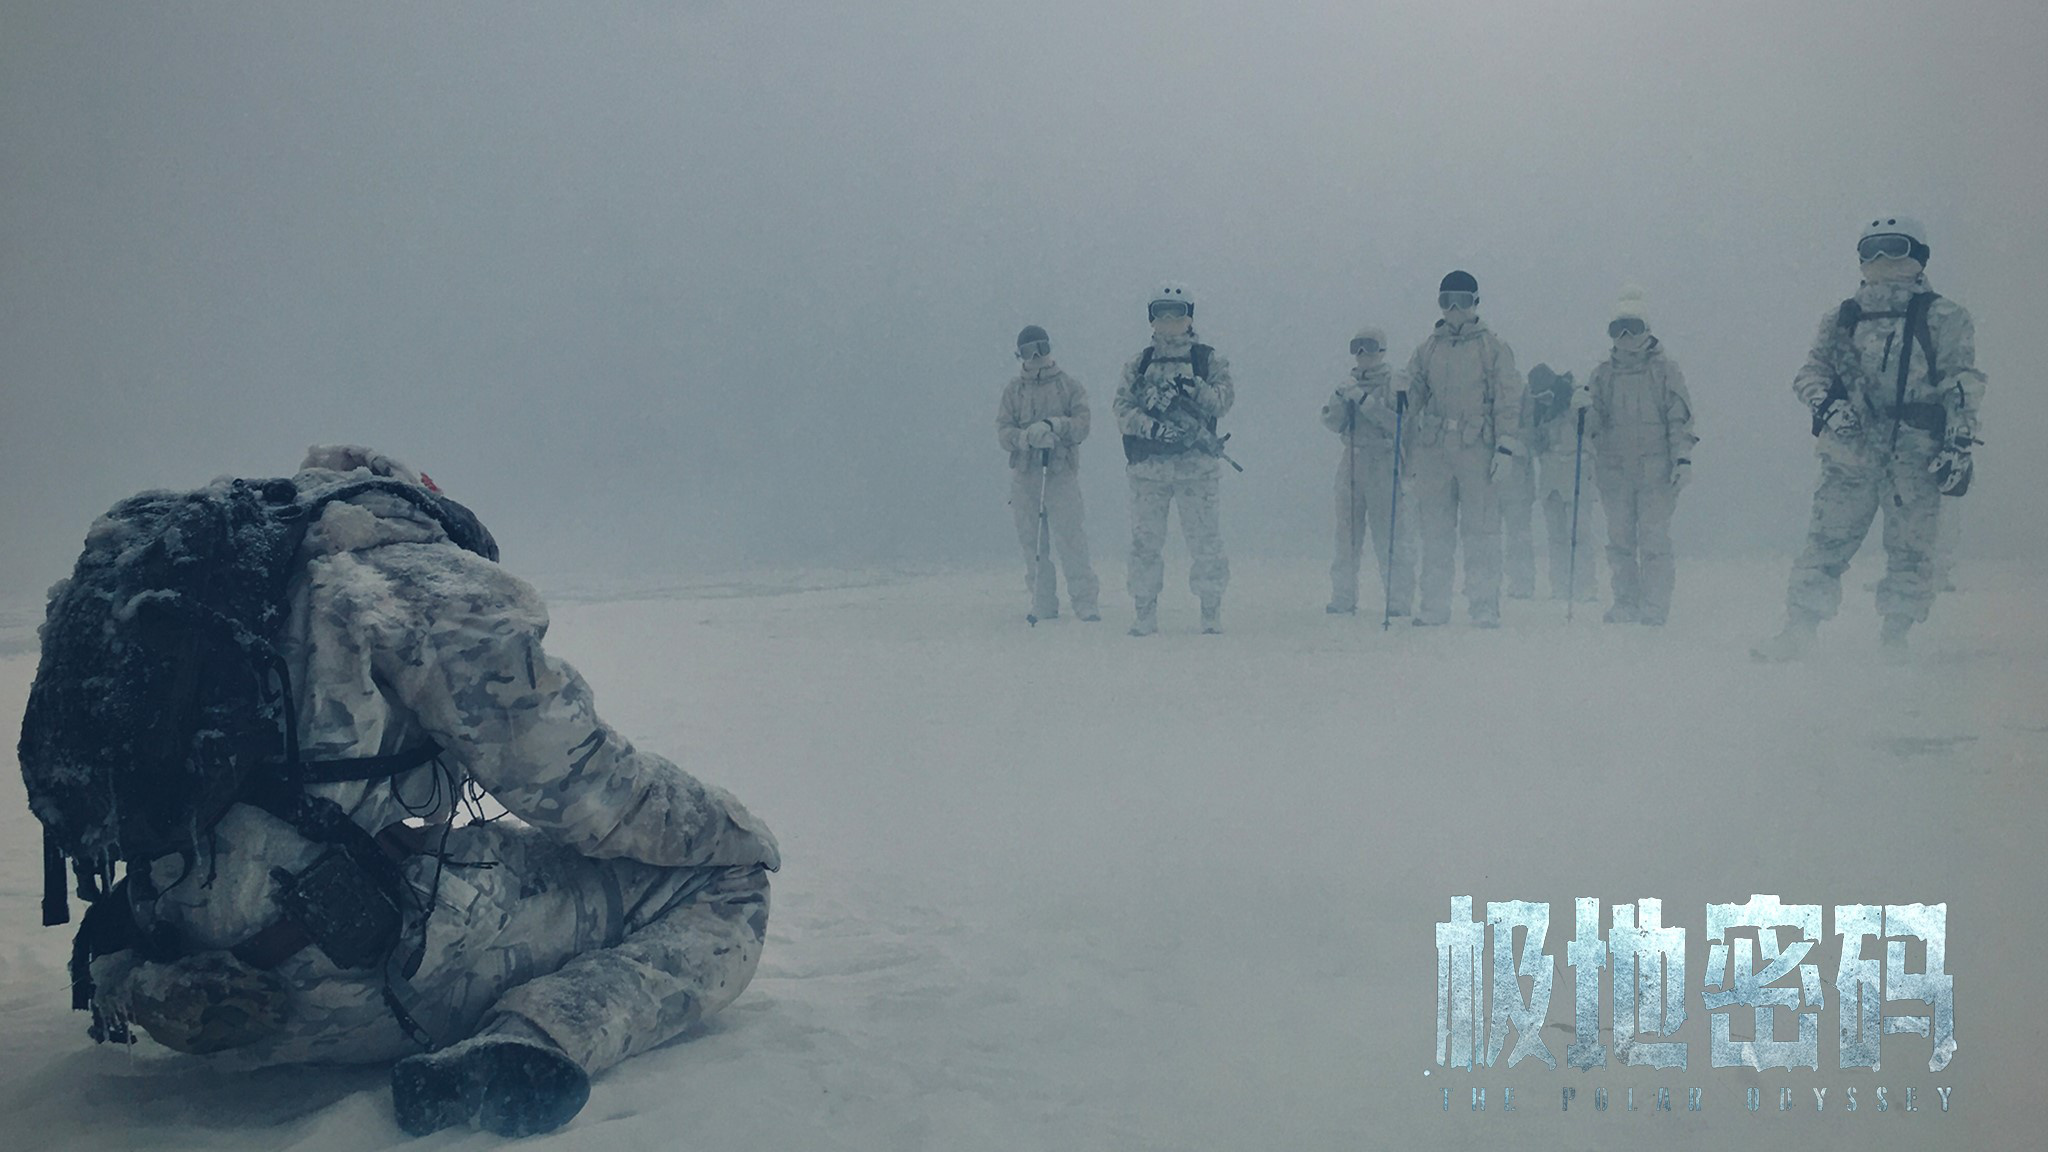 《极地密码》正式上映 张远刘雅瑟携手探险寻宝